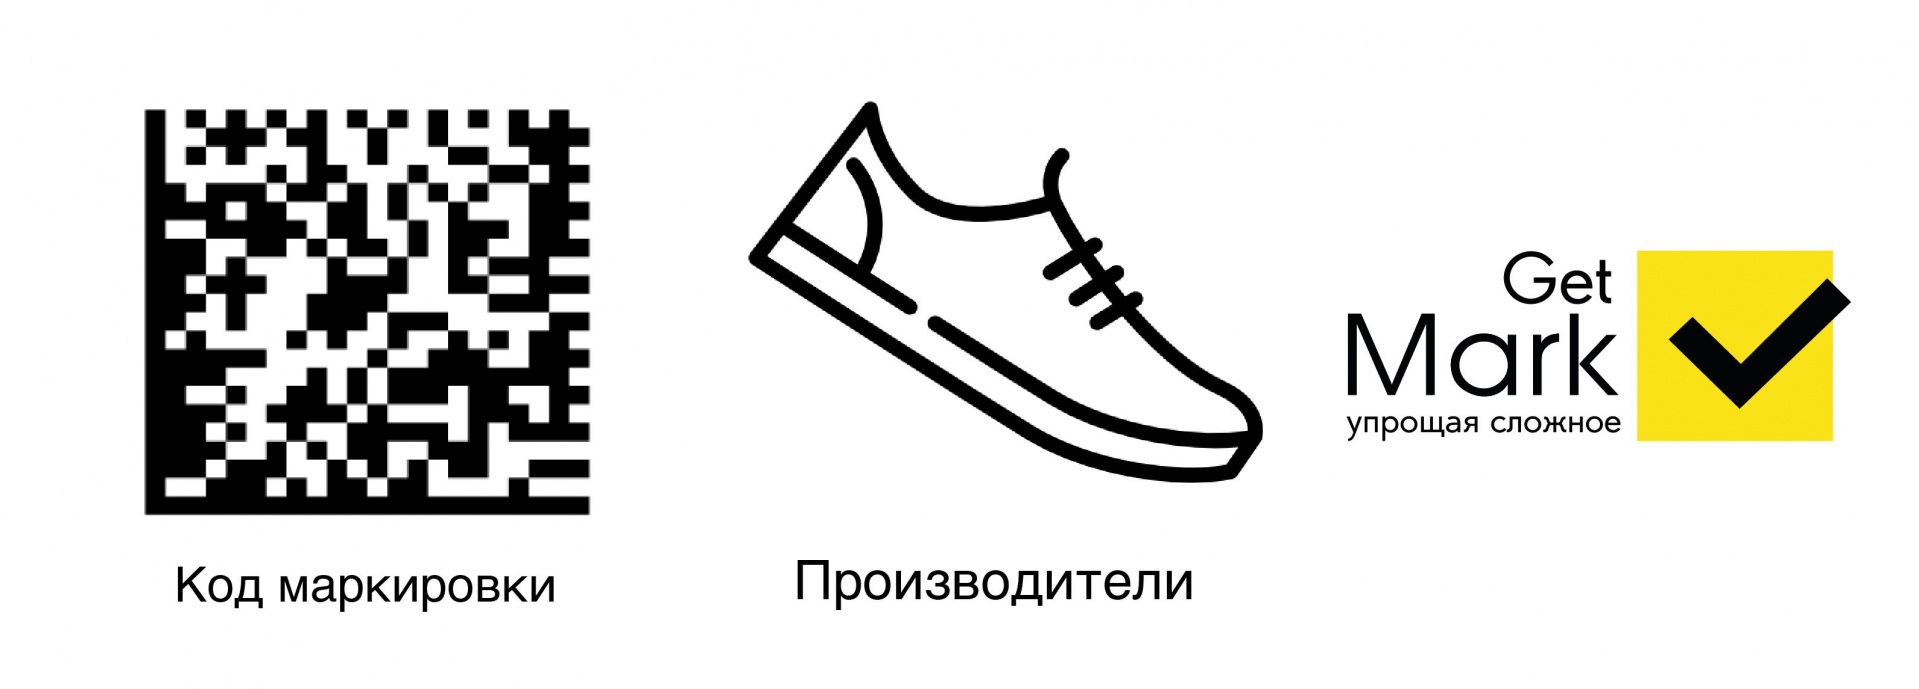 Как ввести в оборот маркированную обувь